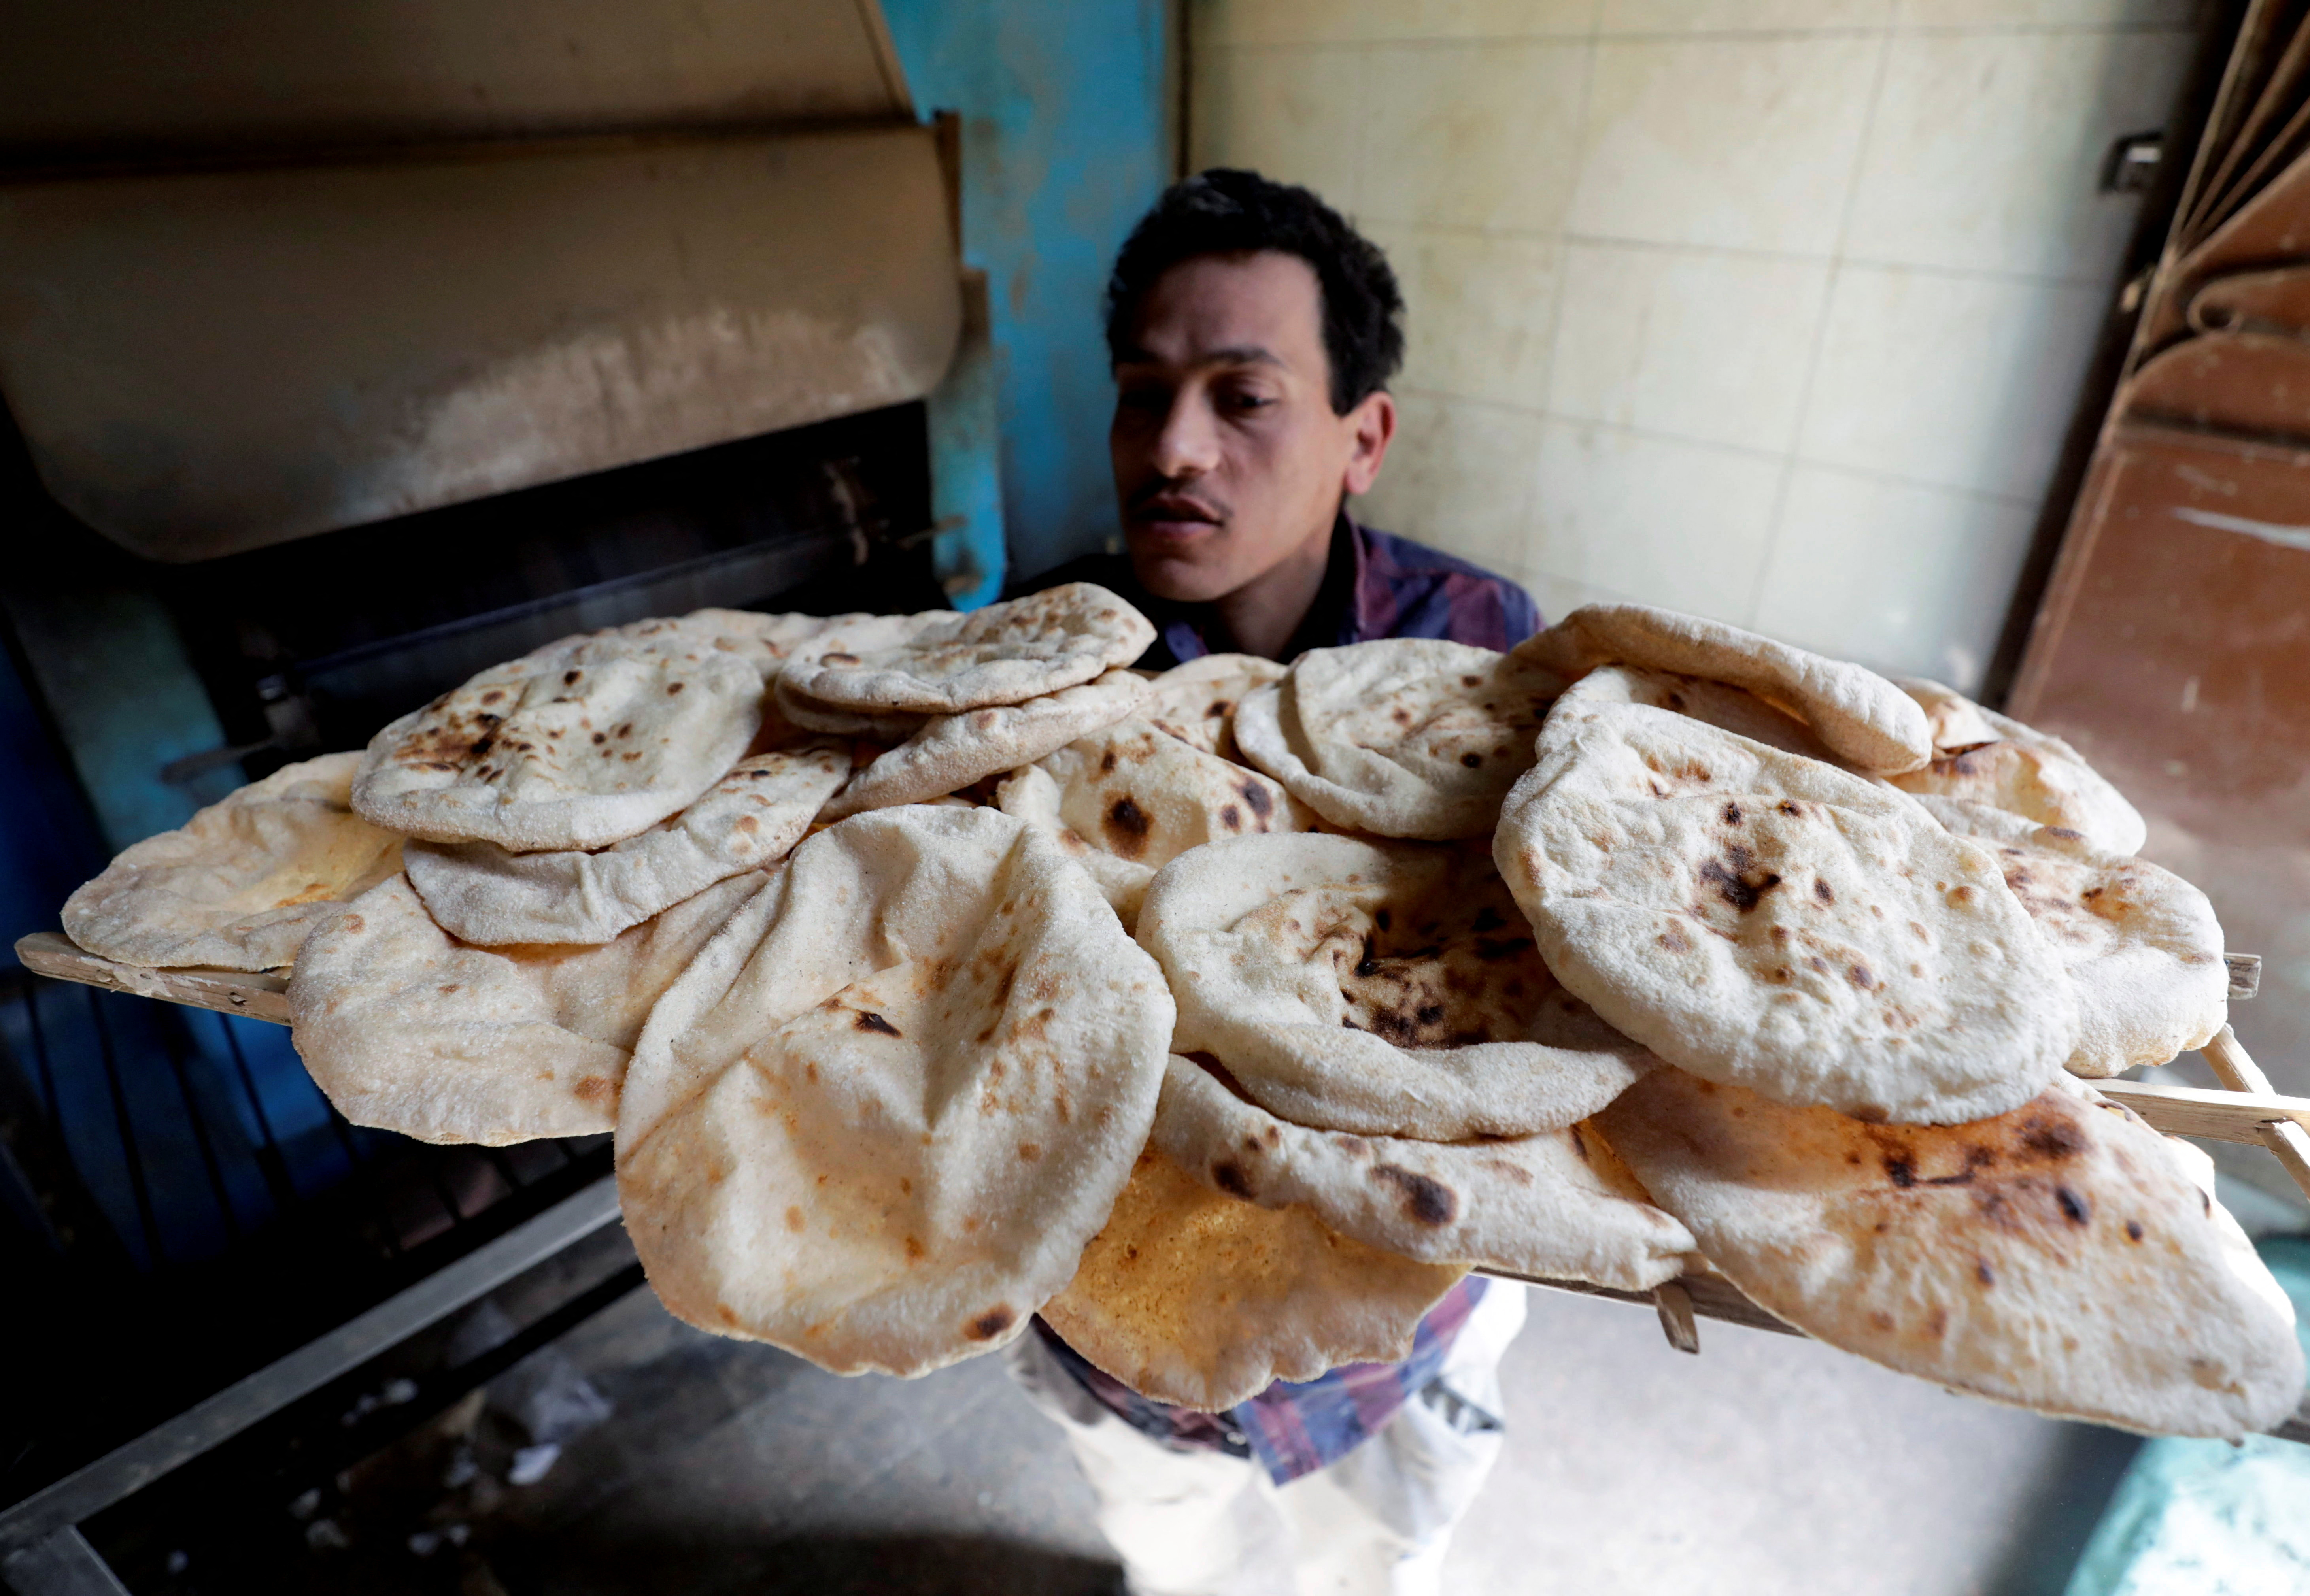 Un panadero saca la primera horneada de pan pita en El-Kalubia, al noreste de El Cairo. El aumento del precio de la harina hizo subir el precio del pan y el descontento social. REUTERS/Mohamed Abd El Ghany